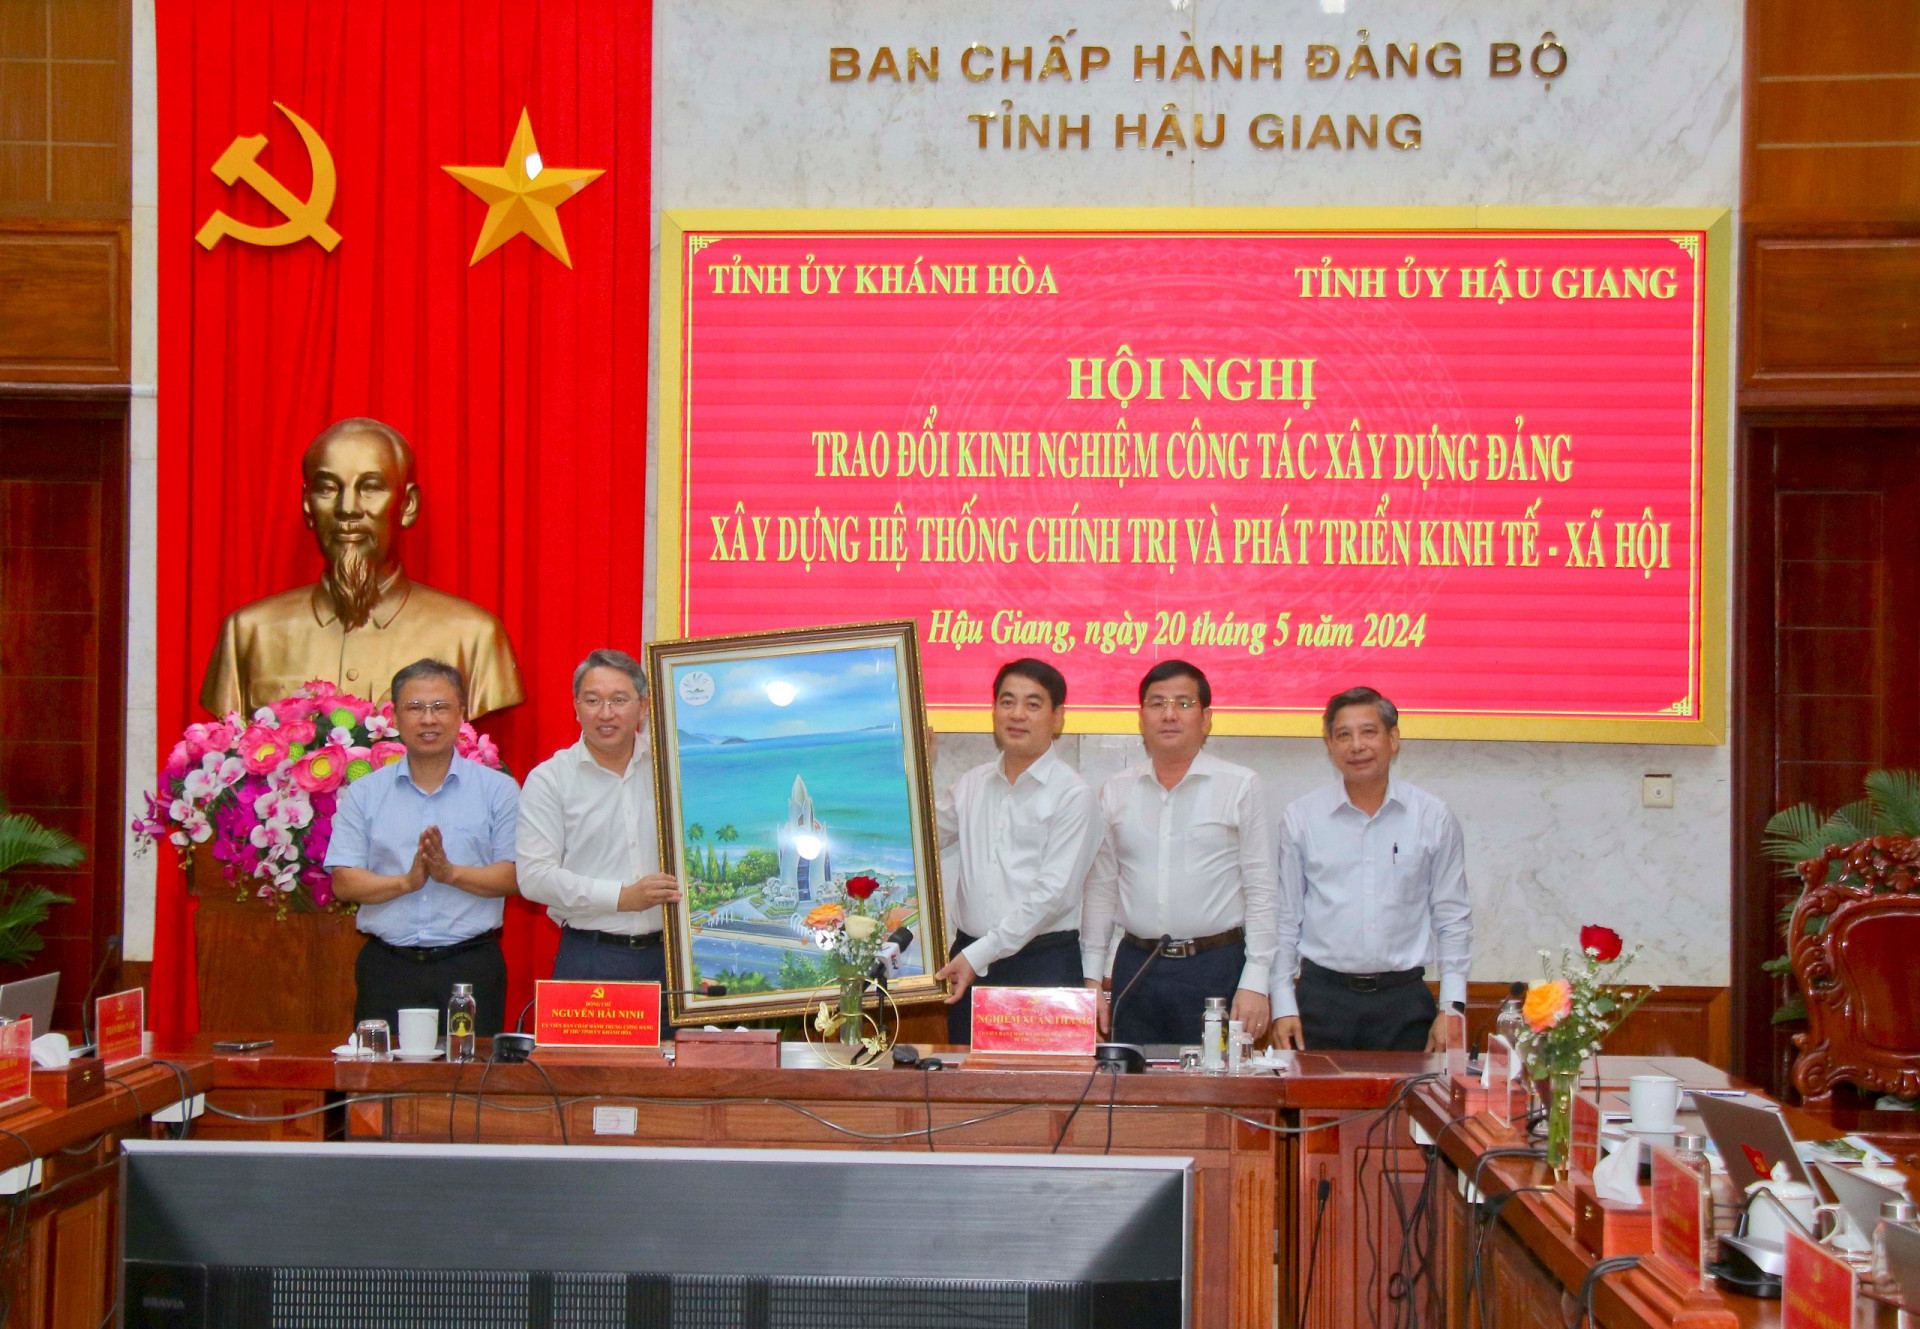 Đoàn công tác Tỉnh uỷ Khánh Hoà (bên trái) tặng tranh lưu niệm đến Thường trực Tỉnh uỷ Hậu Giang.

